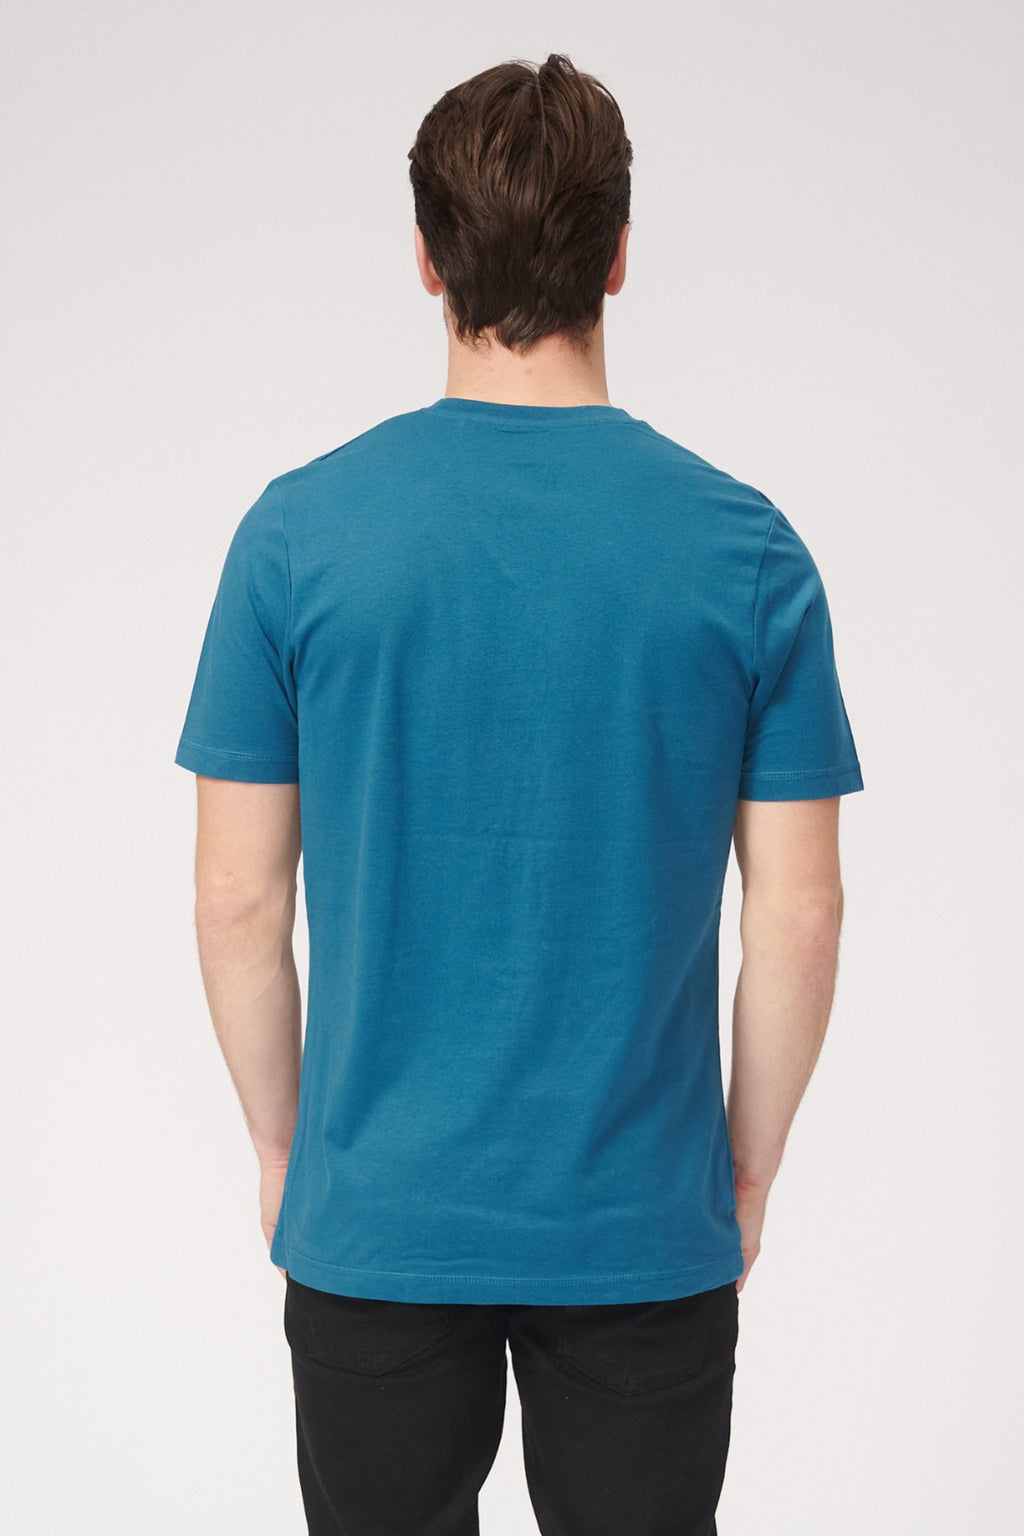 Basic vneck T -Shirt - Erdölblau